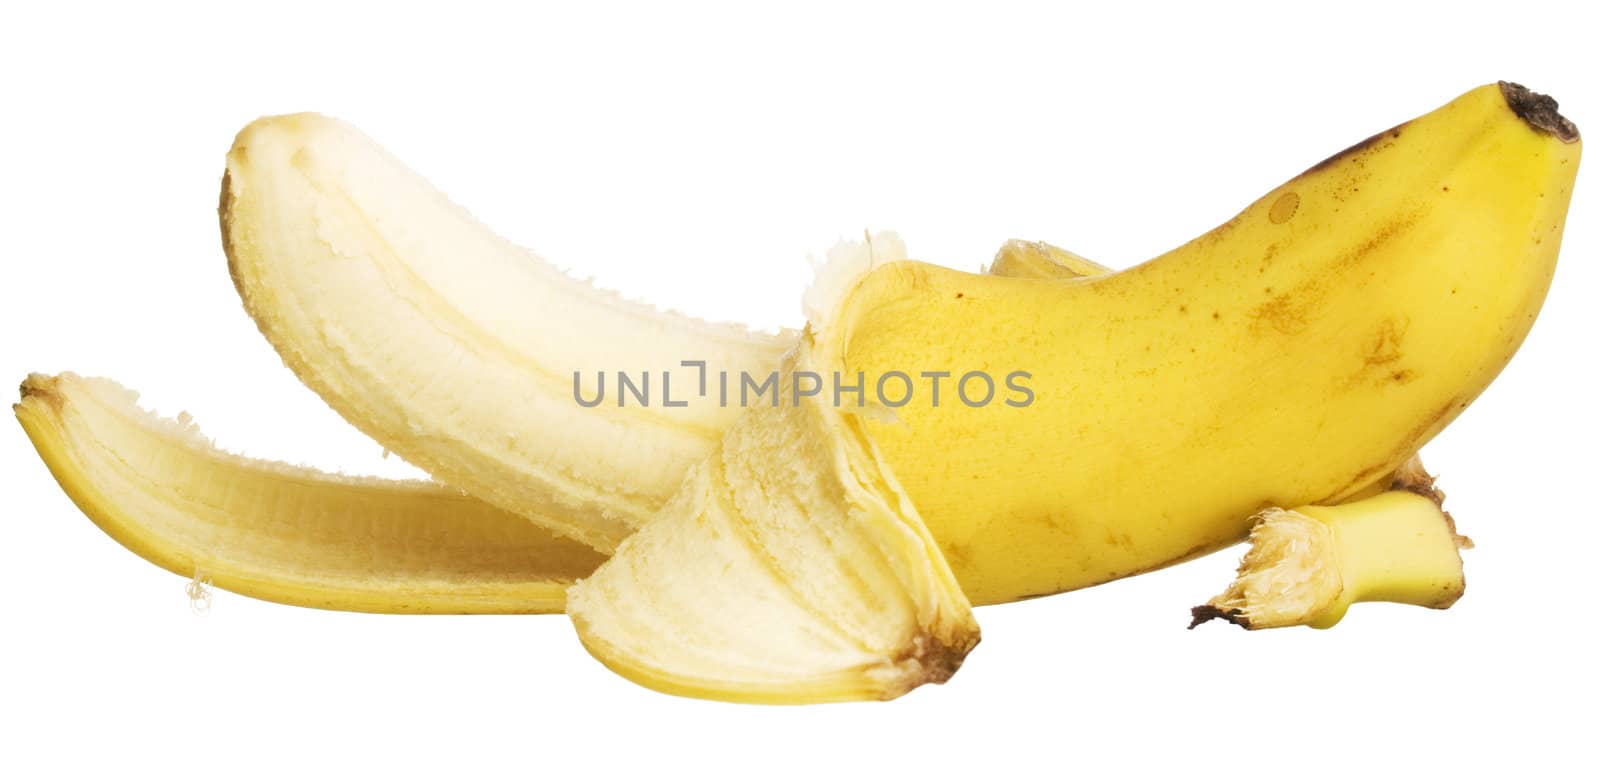 Banana isolated on white.